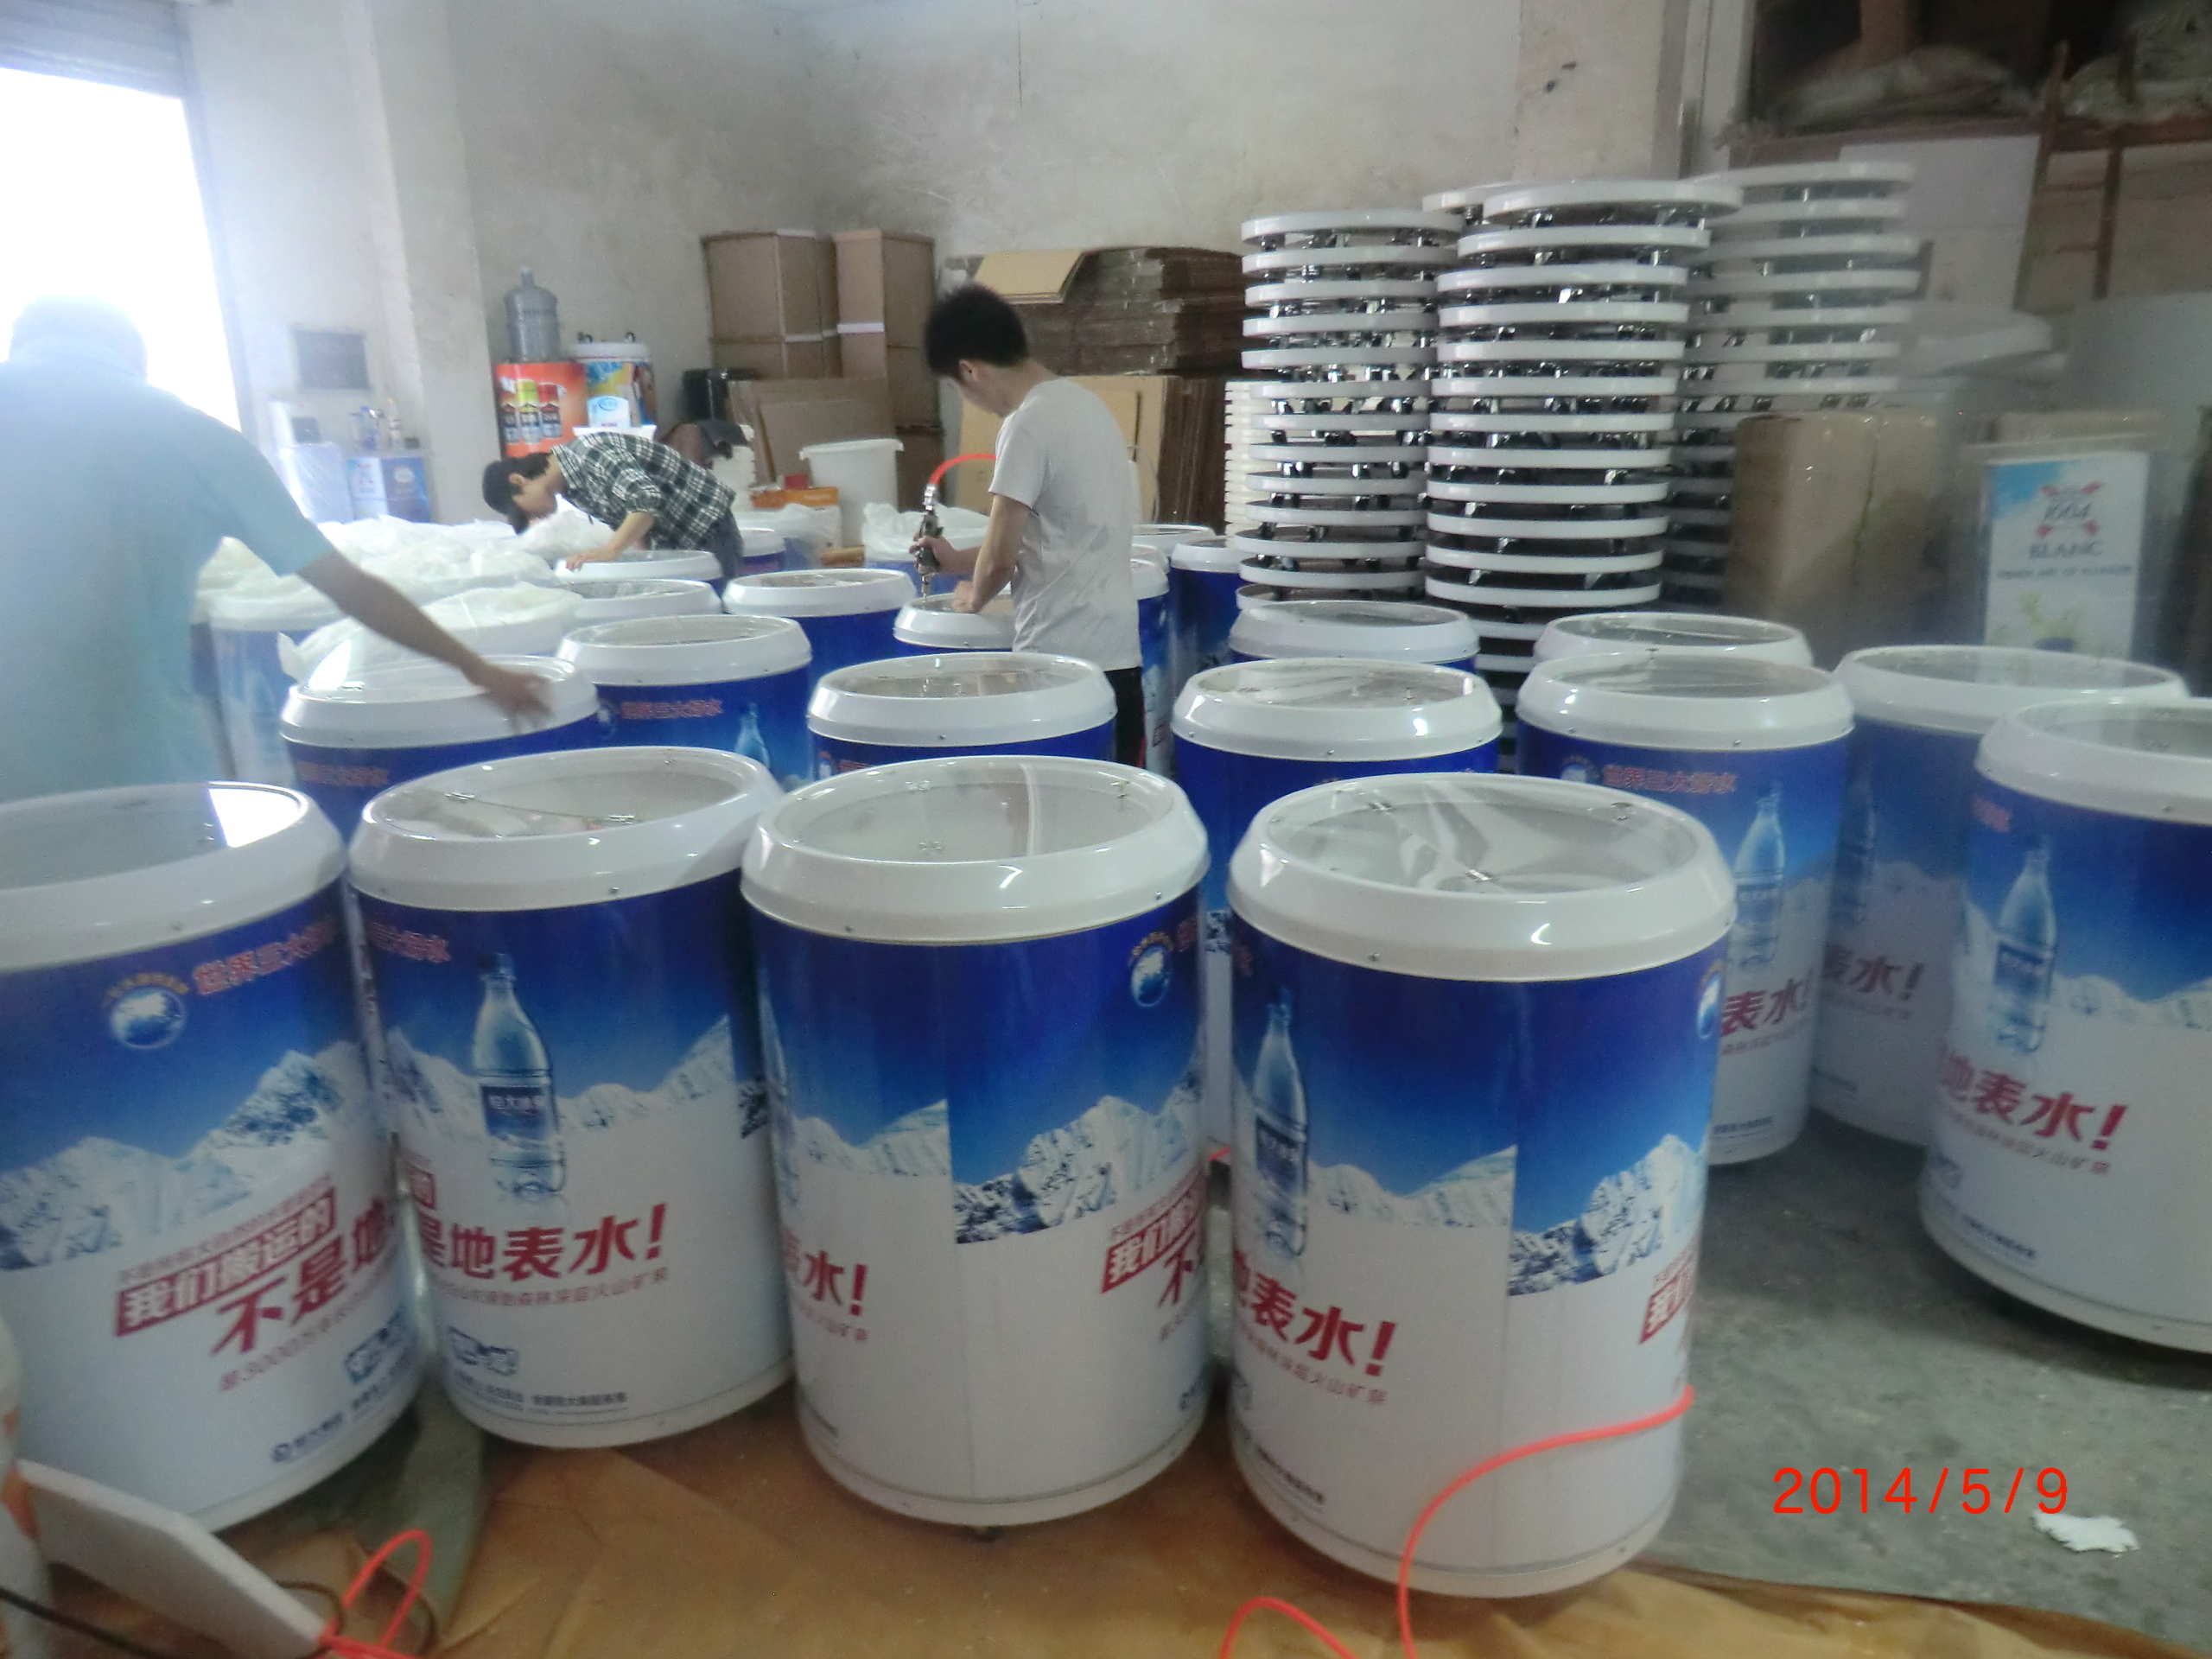 工厂定制抗压耐用ABS罐形冰桶 饮料促销道具广告促销冰桶 广州冰桶厂家